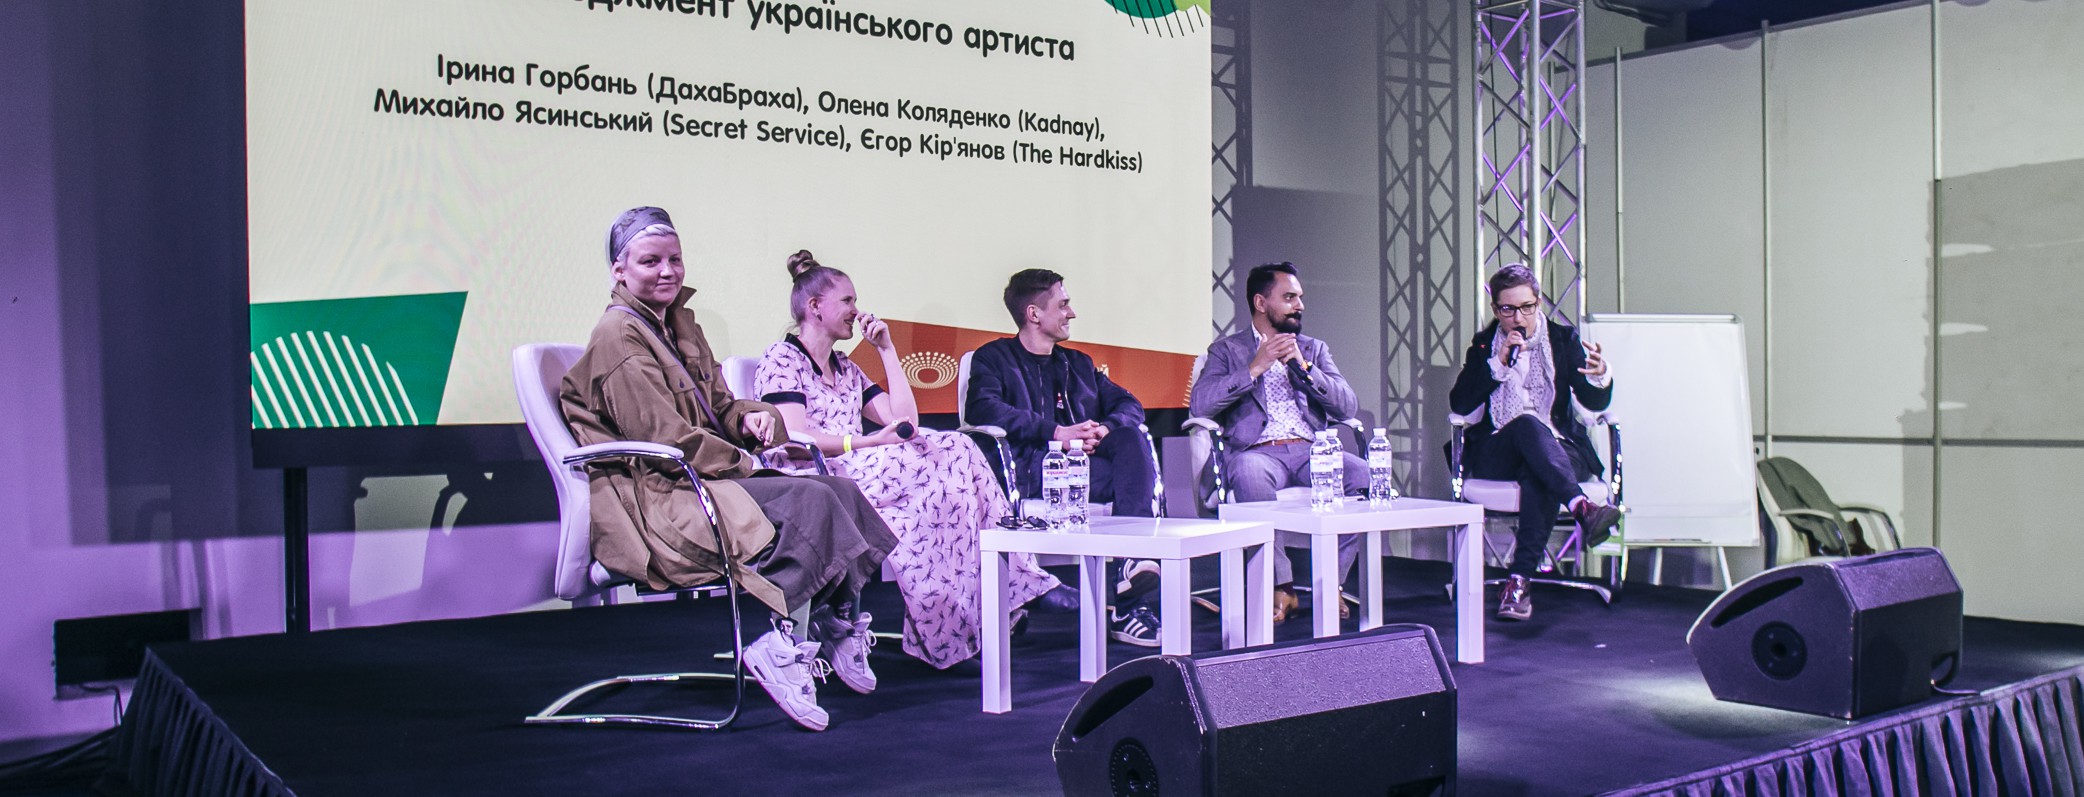 Музыкальные дни нашей эры — в Киеве пройдет форум для артистов и менеджеров